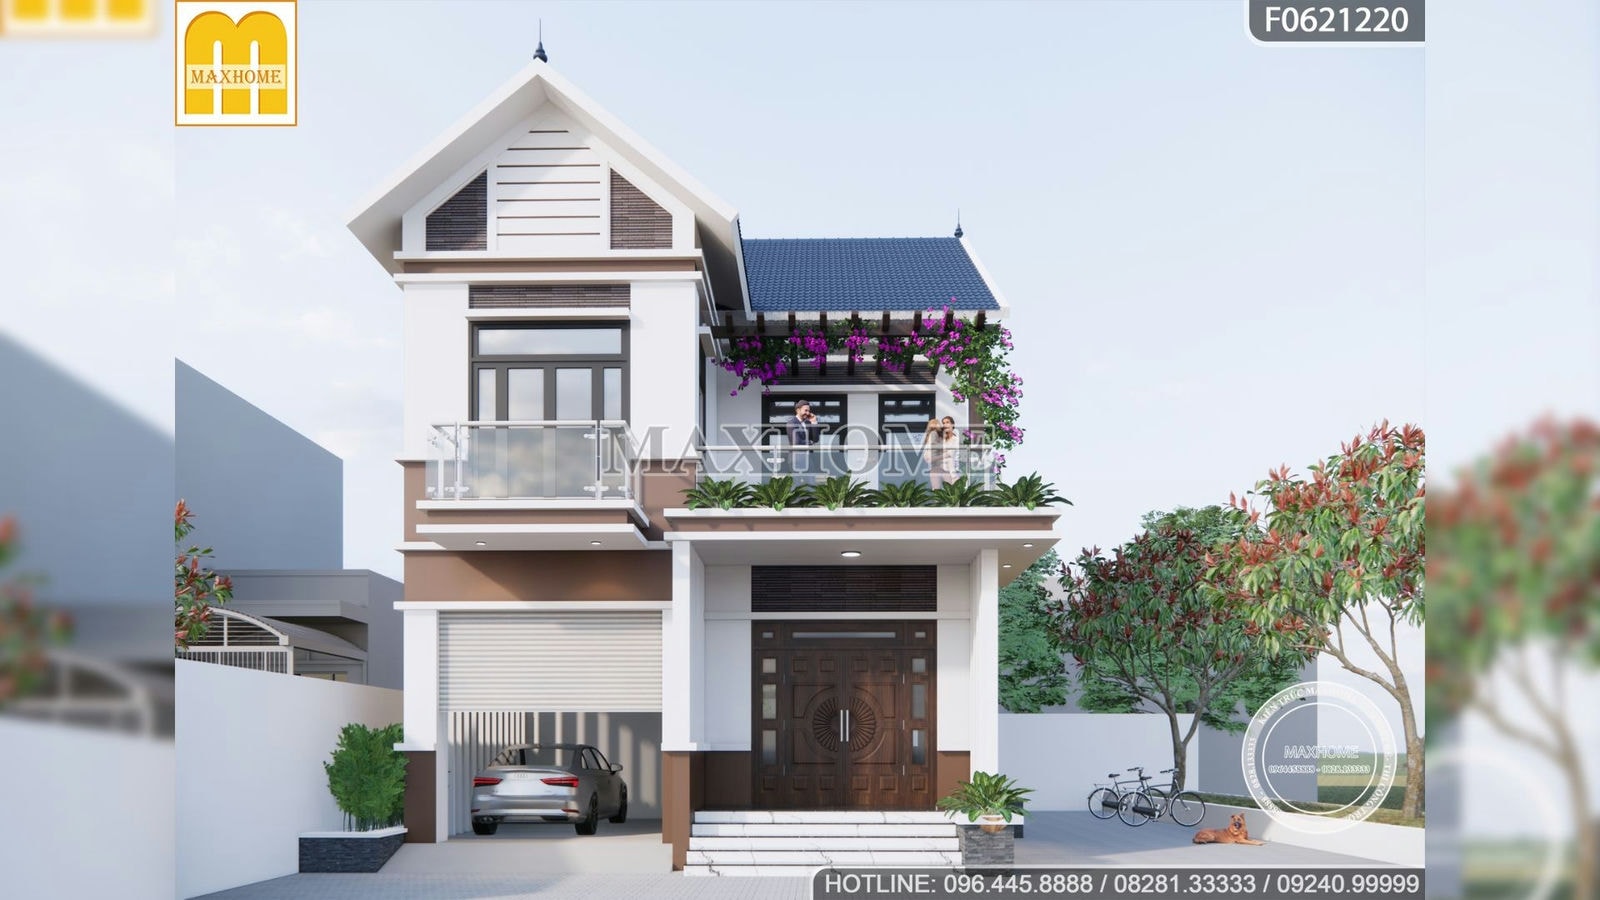 Mẫu nhà 2 tầng mái Thái đẹp và ấn tượng nhất vừa qua | MH00572 | MAXHOME -  HỆ THỐNG THIẾT KẾ THI CÔNG TRỌN GÓI HÀNG ĐẦU VIỆT NAM